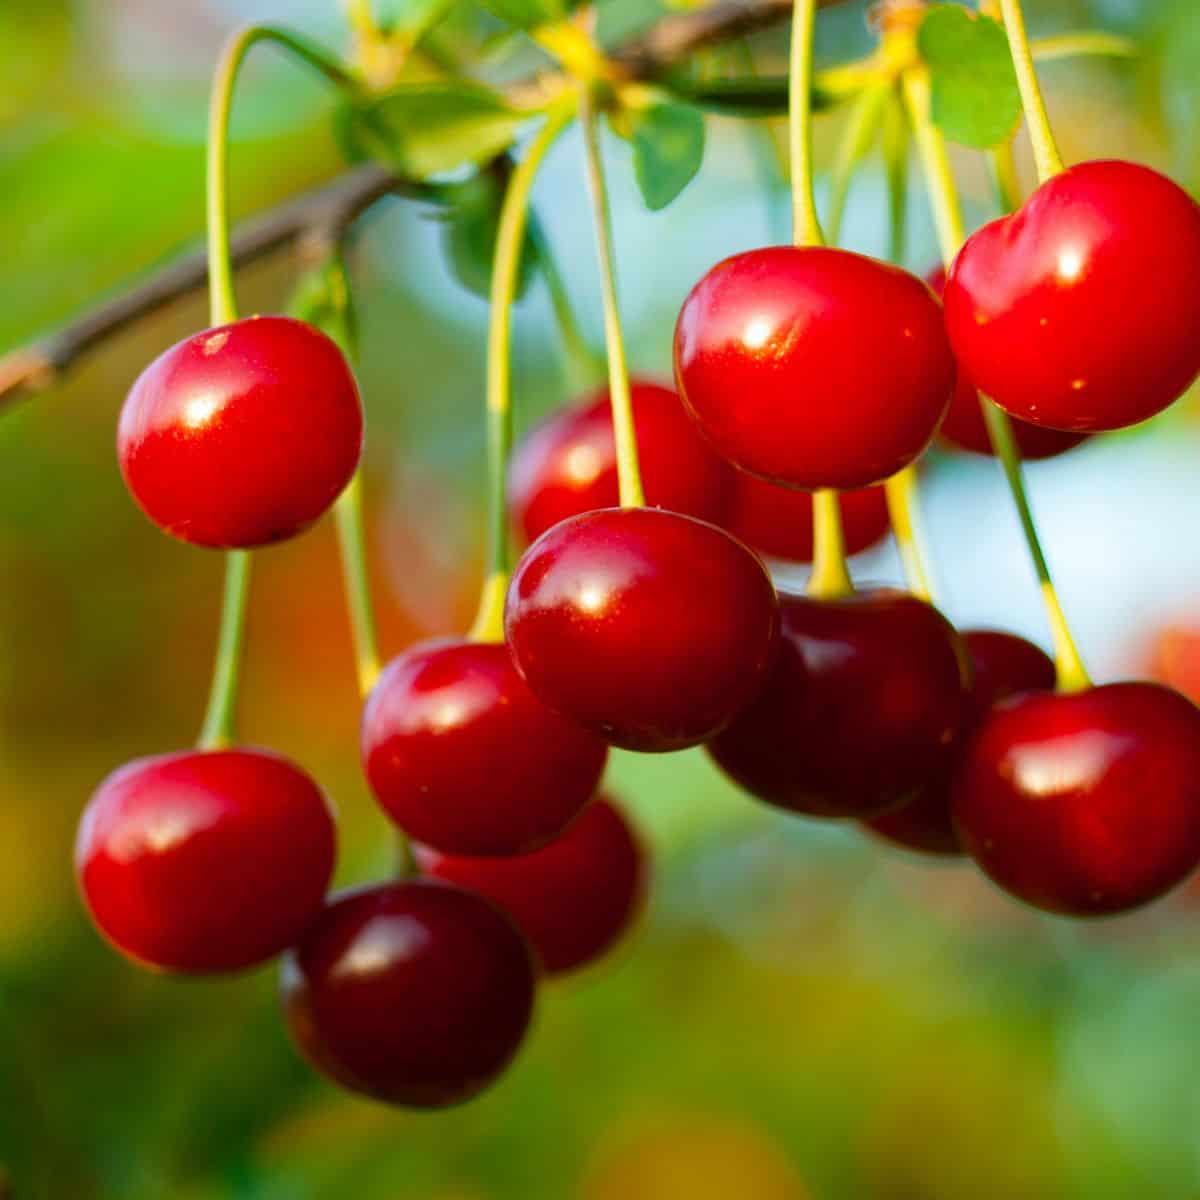 Sour cherries on tree.
